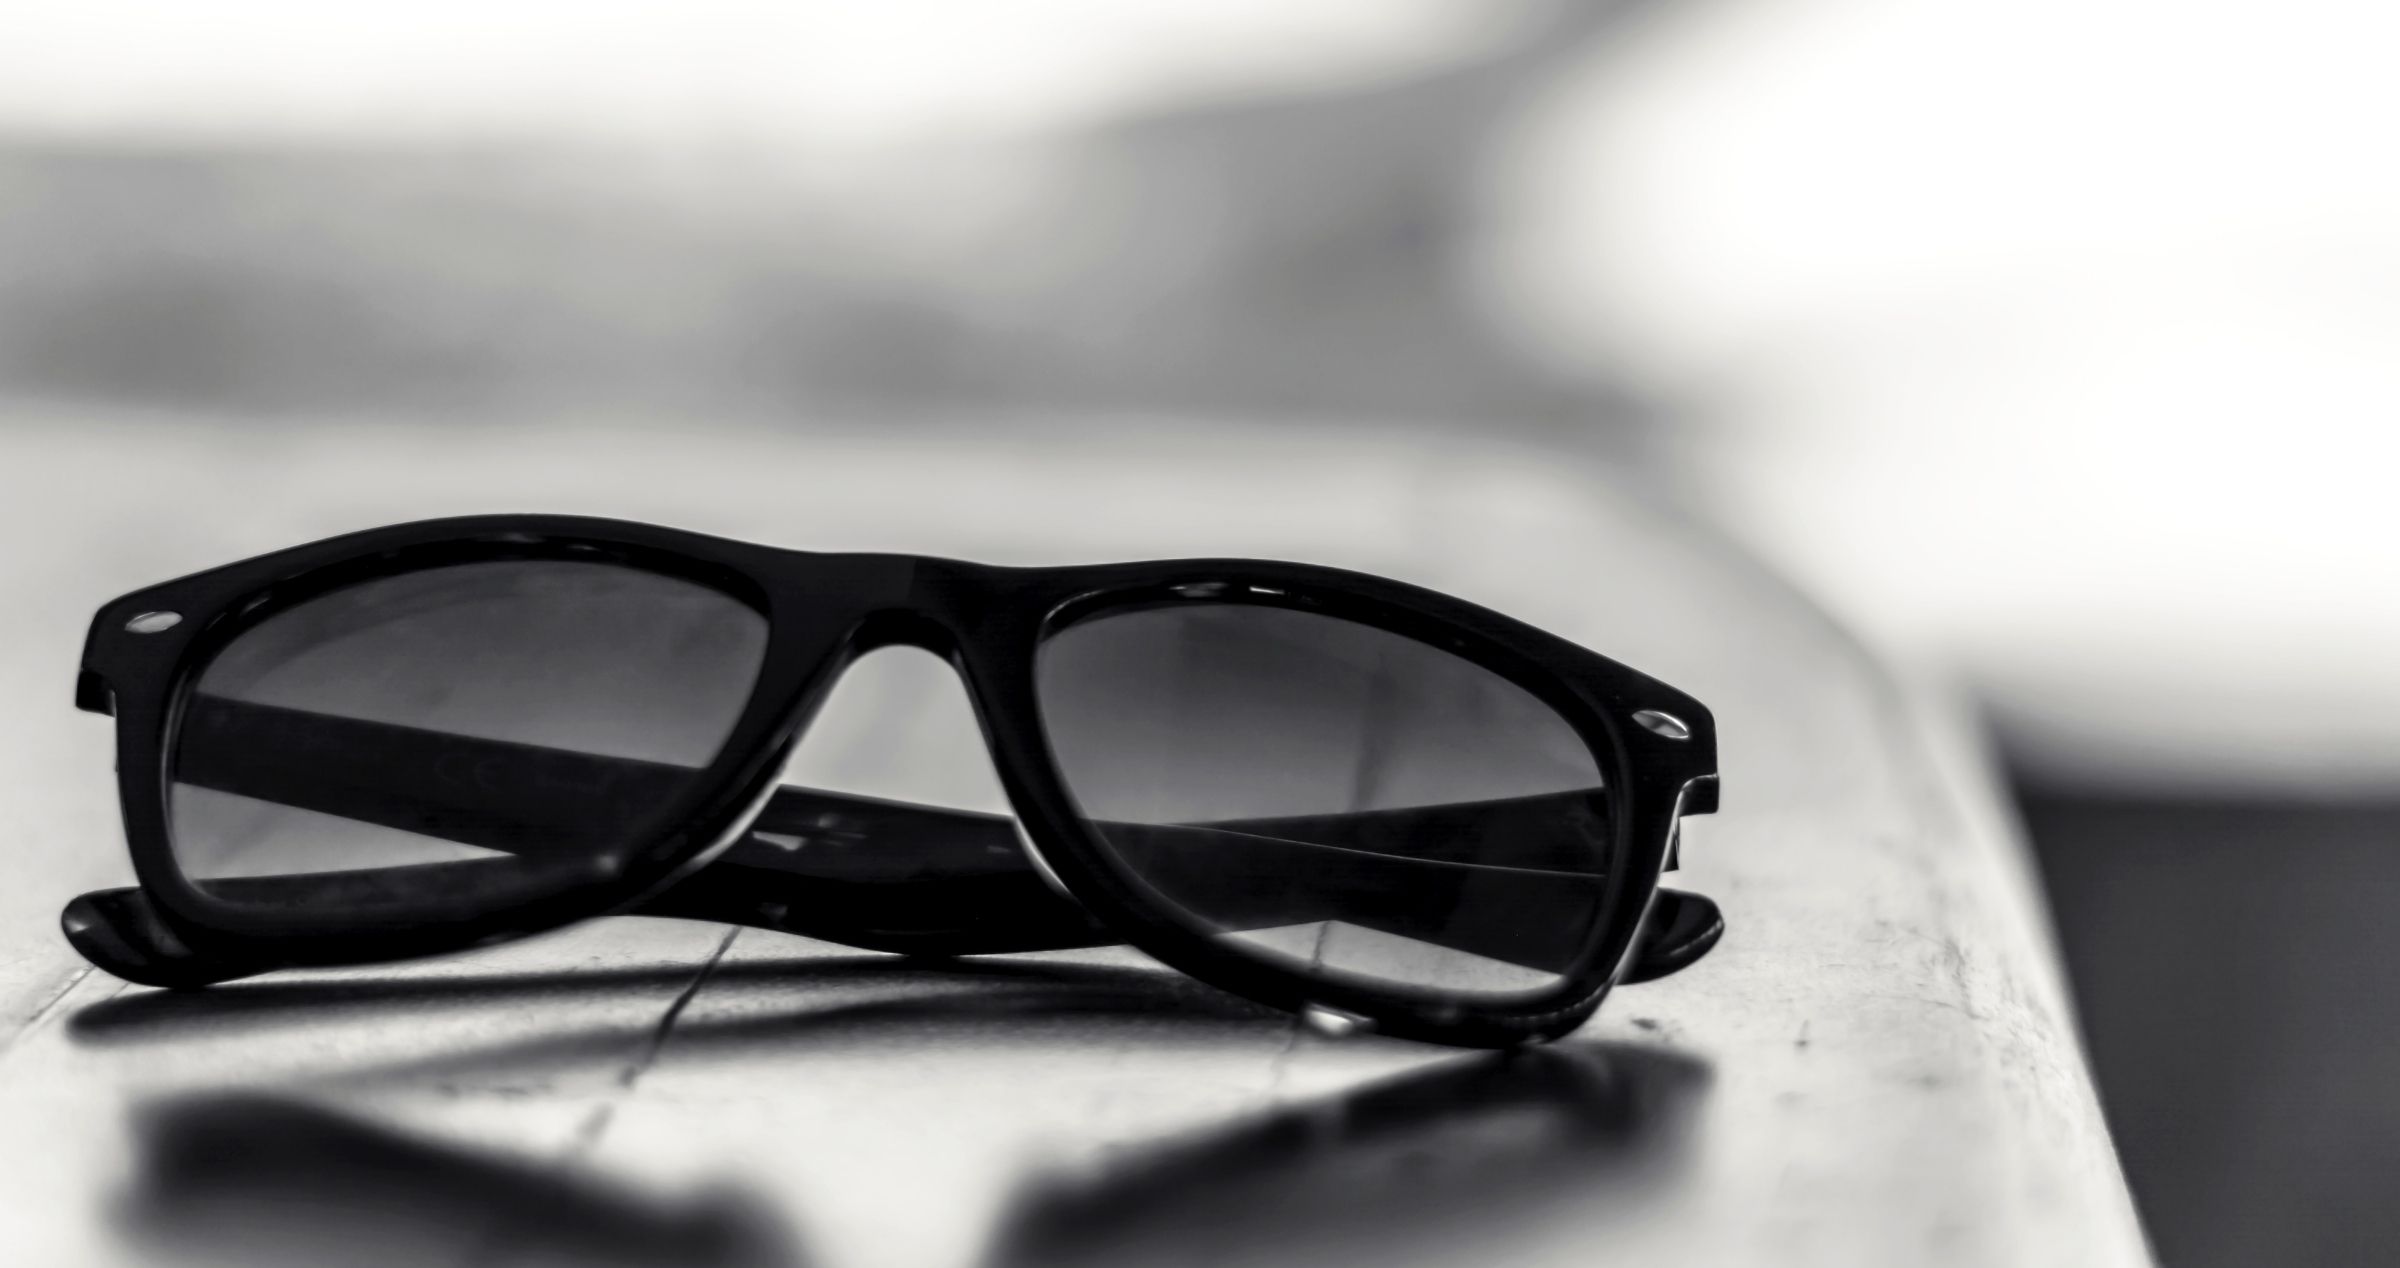 Image of dark folded sunglasses on edge of table